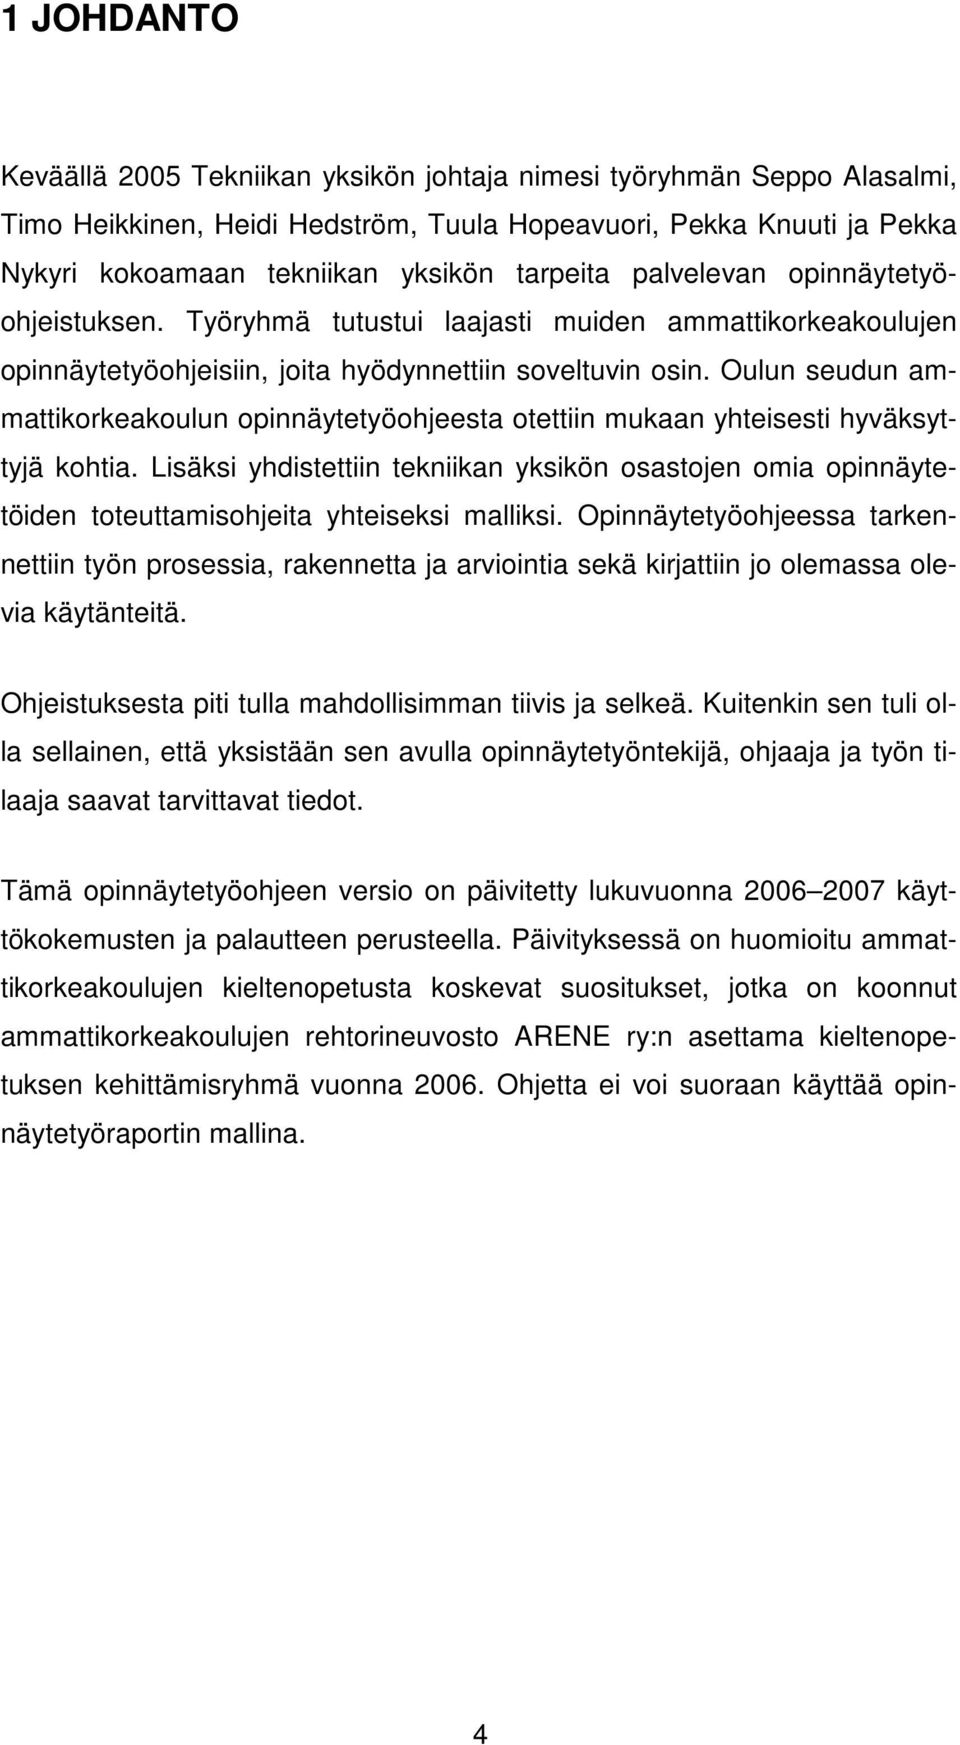 Oulun seudun ammattikorkeakoulun opinnäytetyöohjeesta otettiin mukaan yhteisesti hyväksyttyjä kohtia.